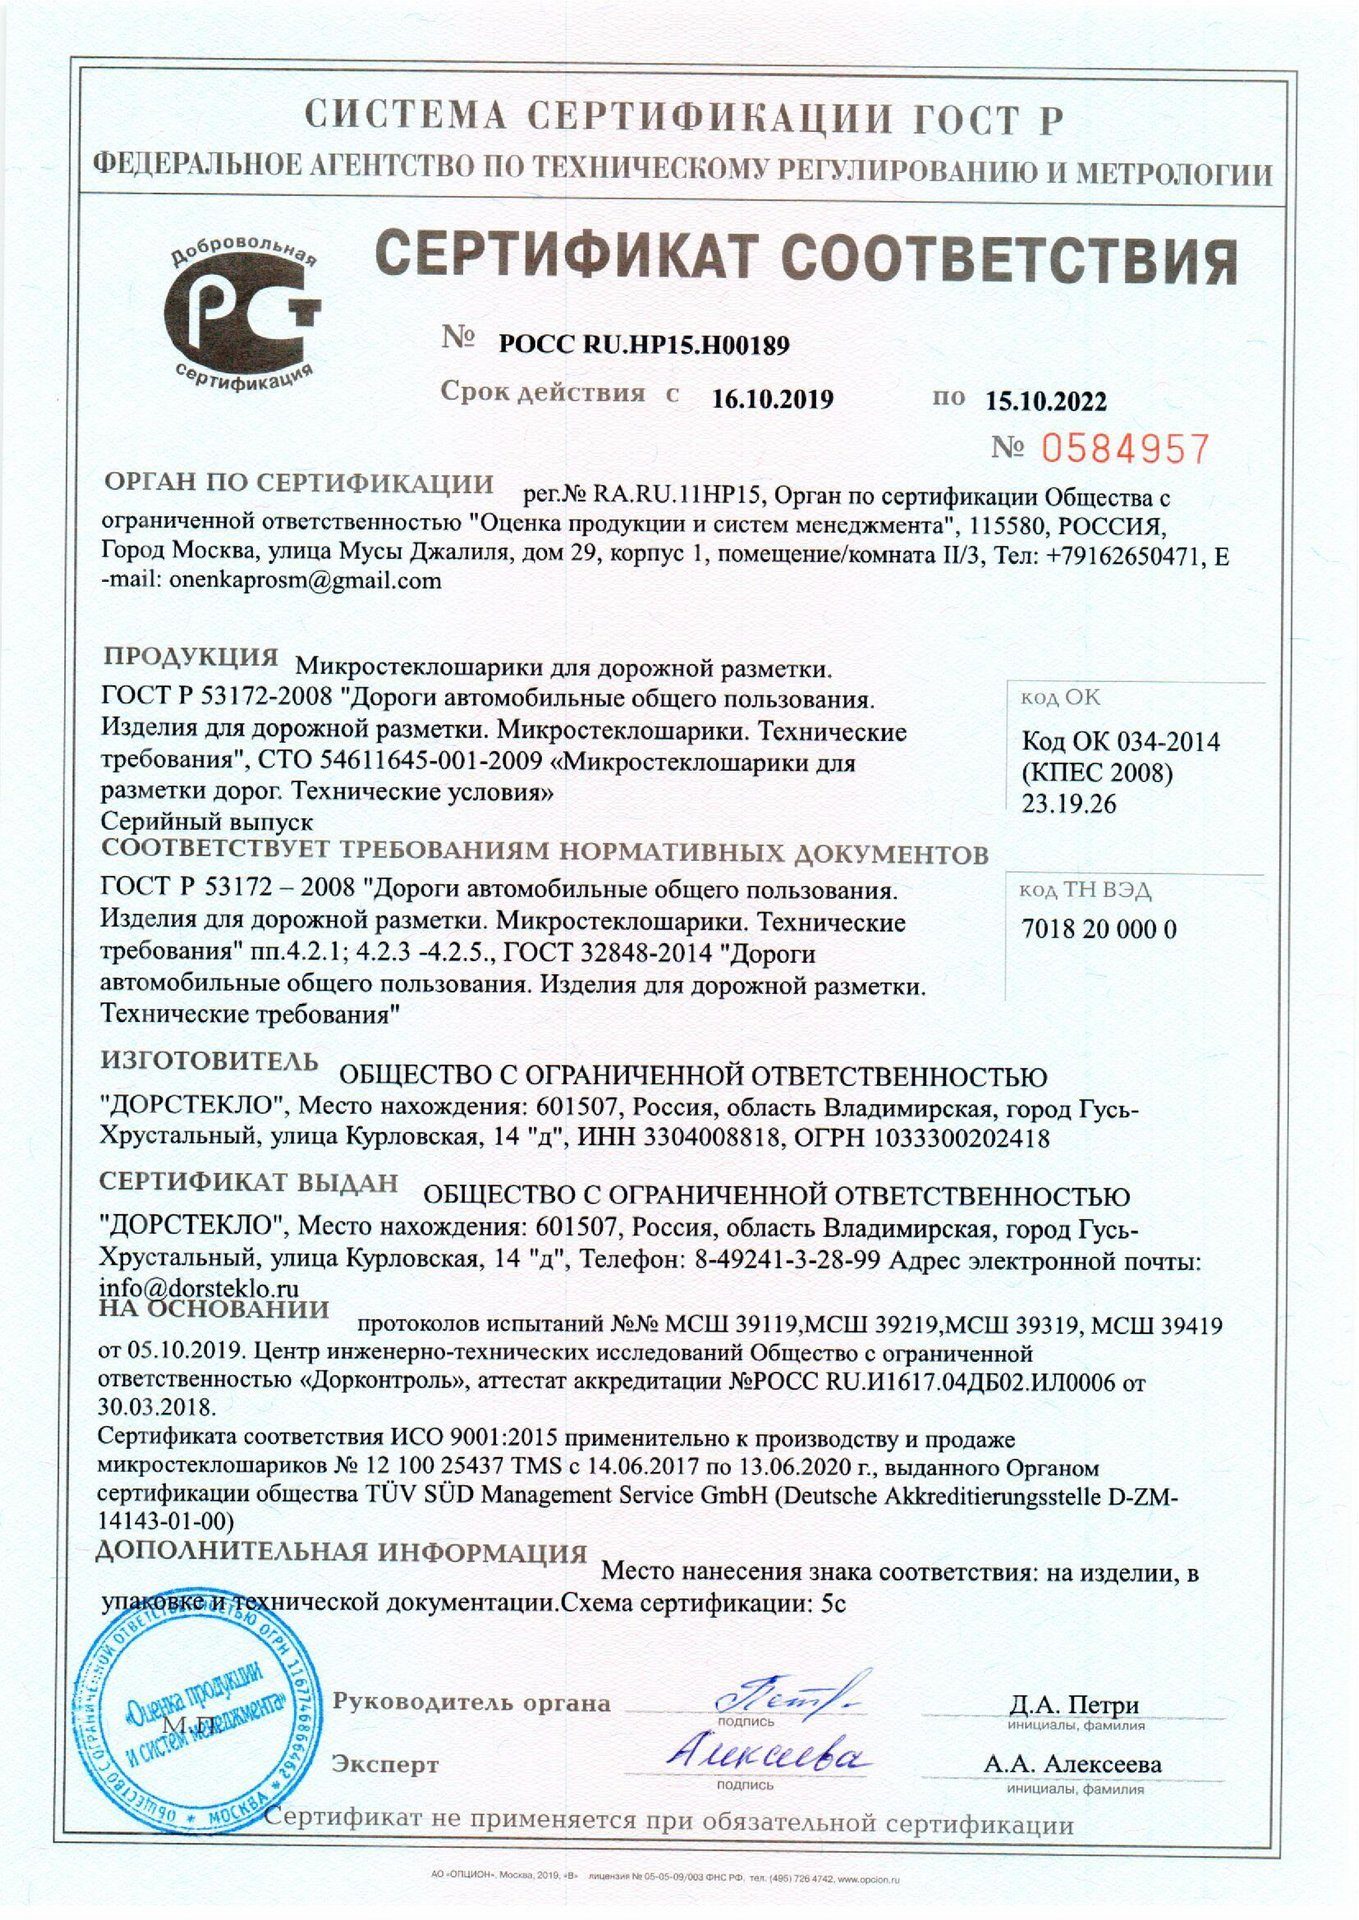 Сертификат соответствия на МСШ